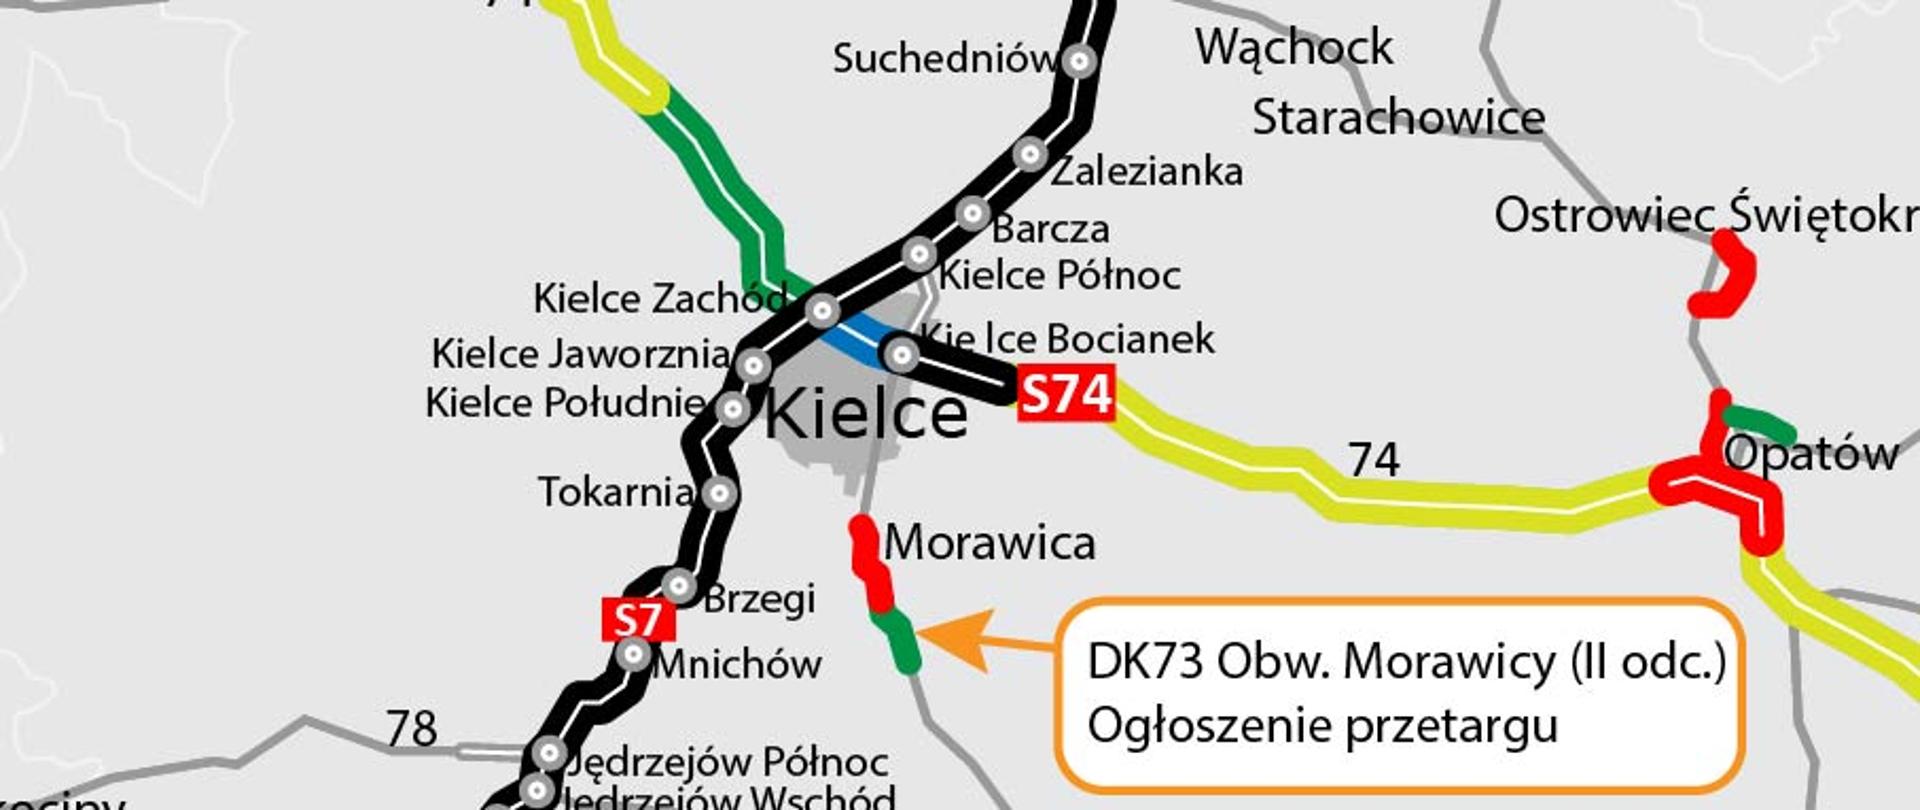 Mapa obw. Morawicy (II odc.) w ciągu DK73